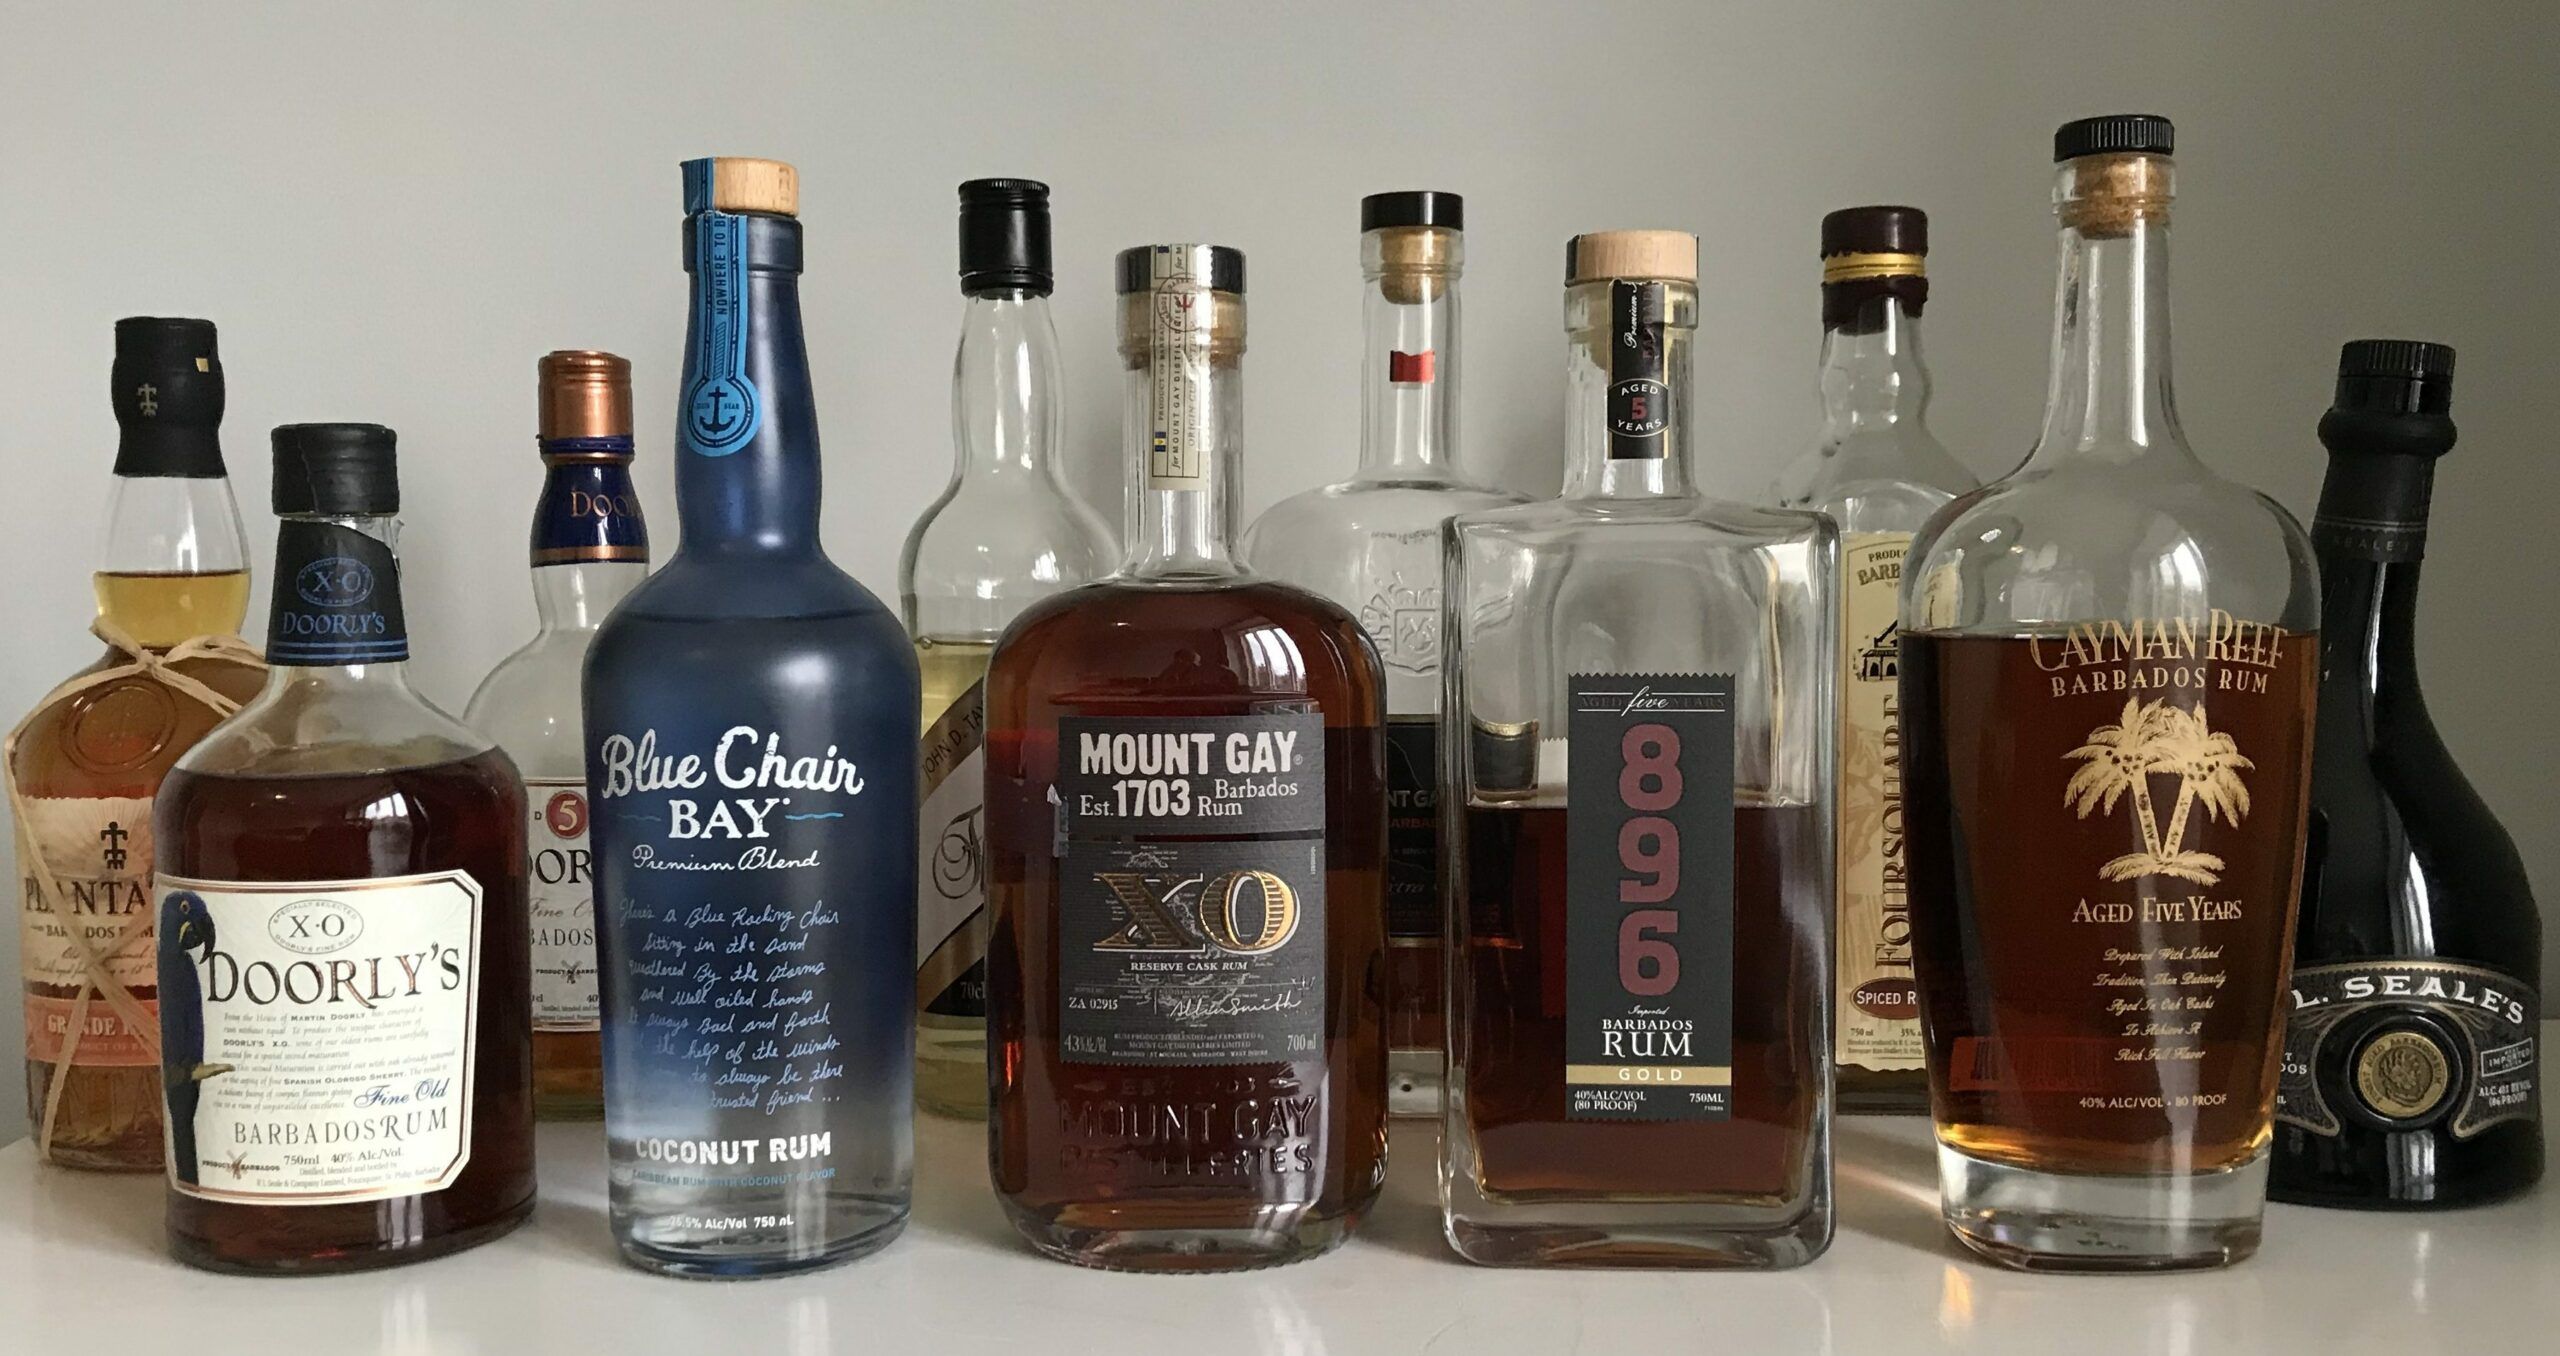 Barbados Rum - několik známých značek bajan rumů